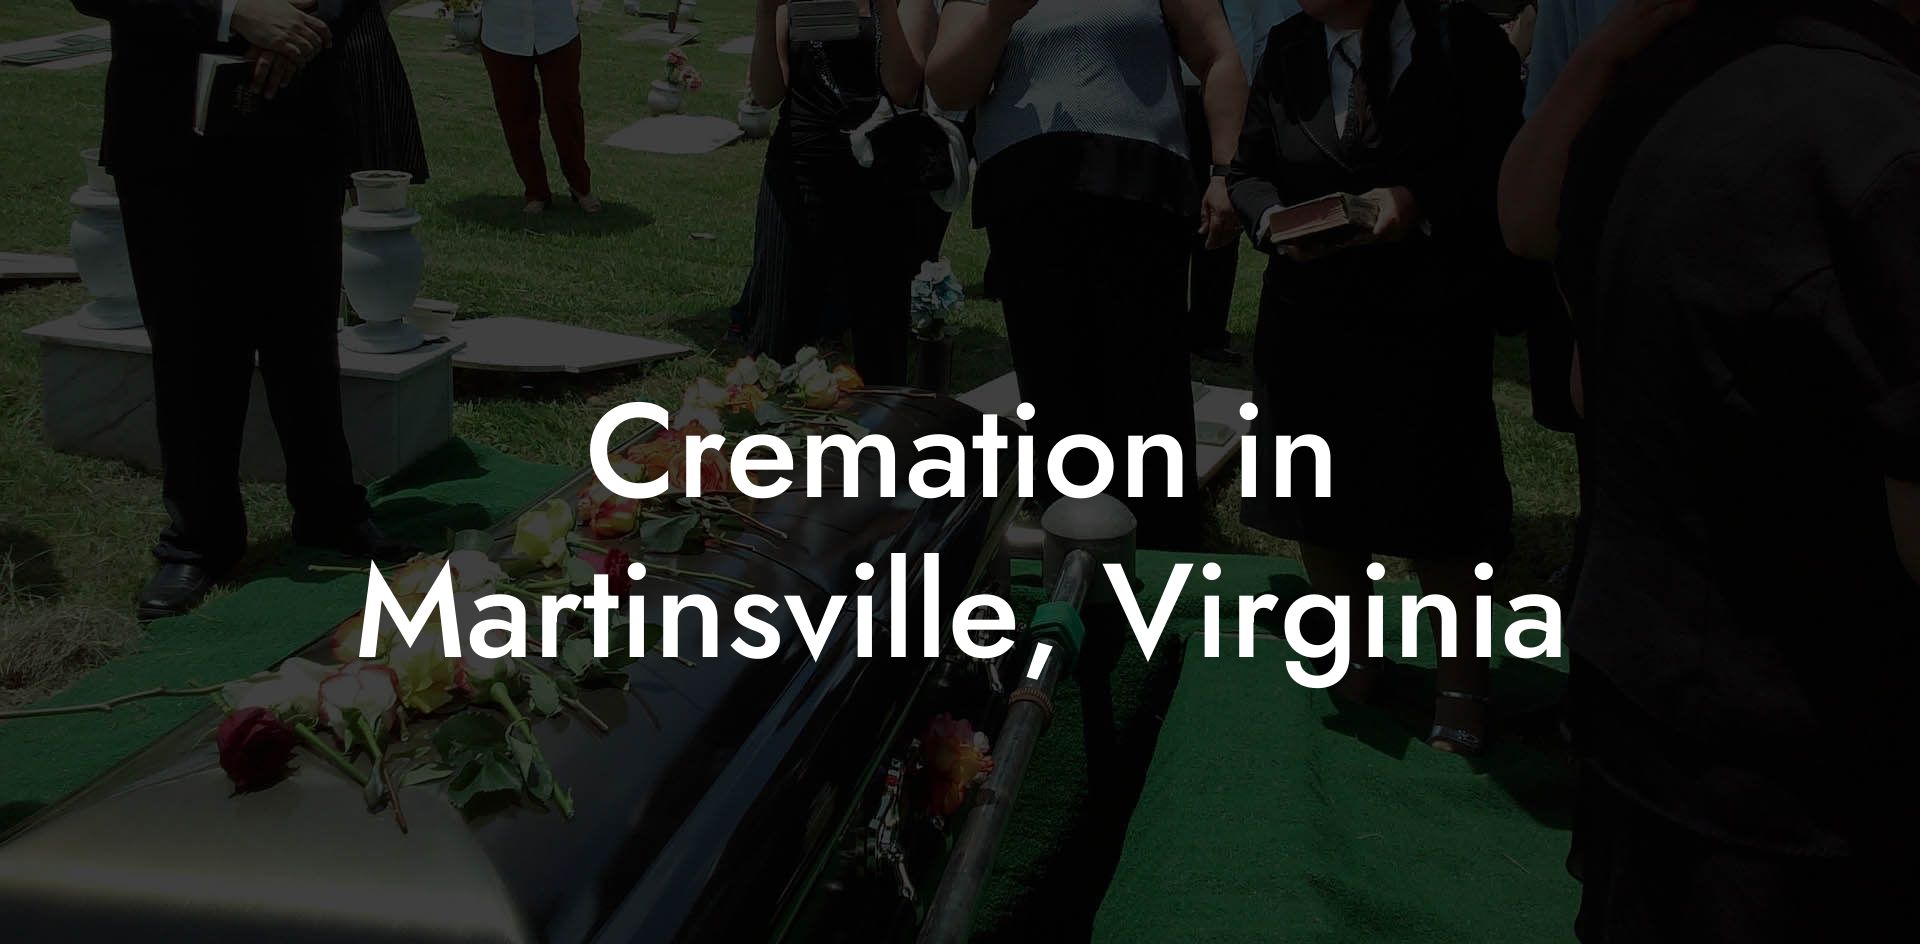 Cremation in Martinsville, Virginia